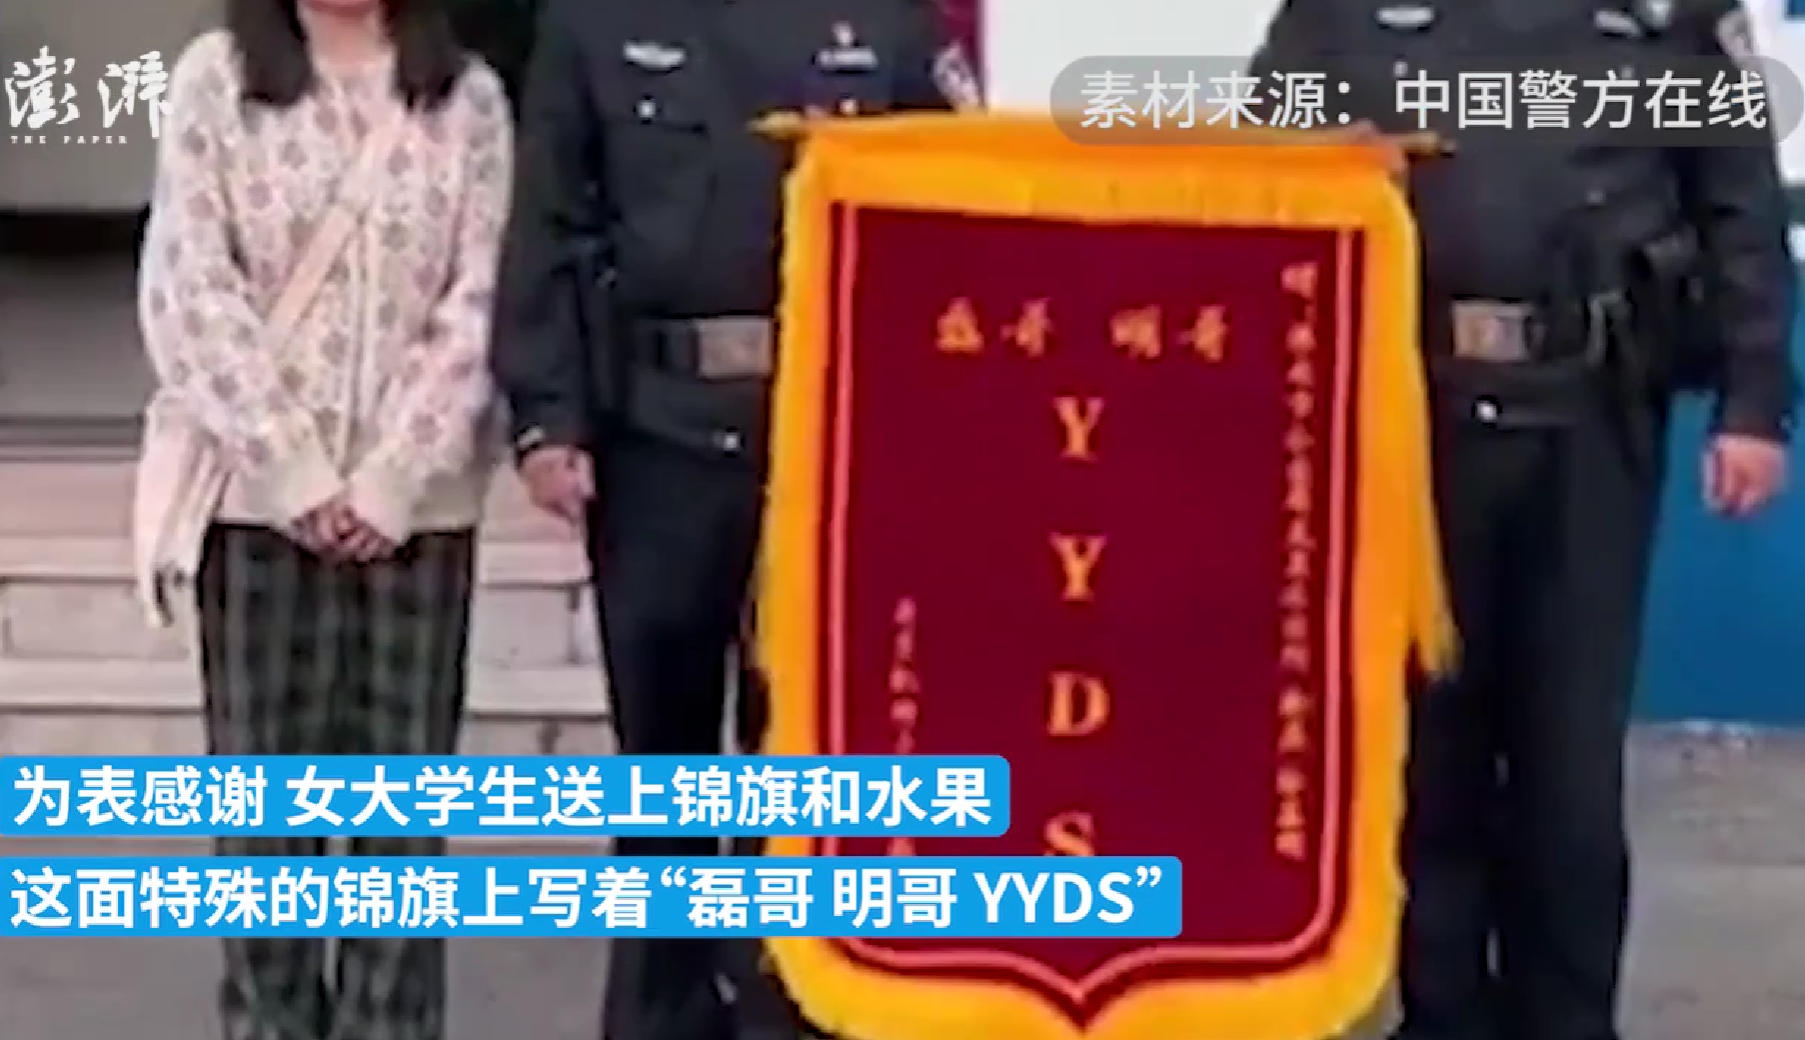 两次丢手机被找回 淮南一大学生赠民警“YYDS”锦旗